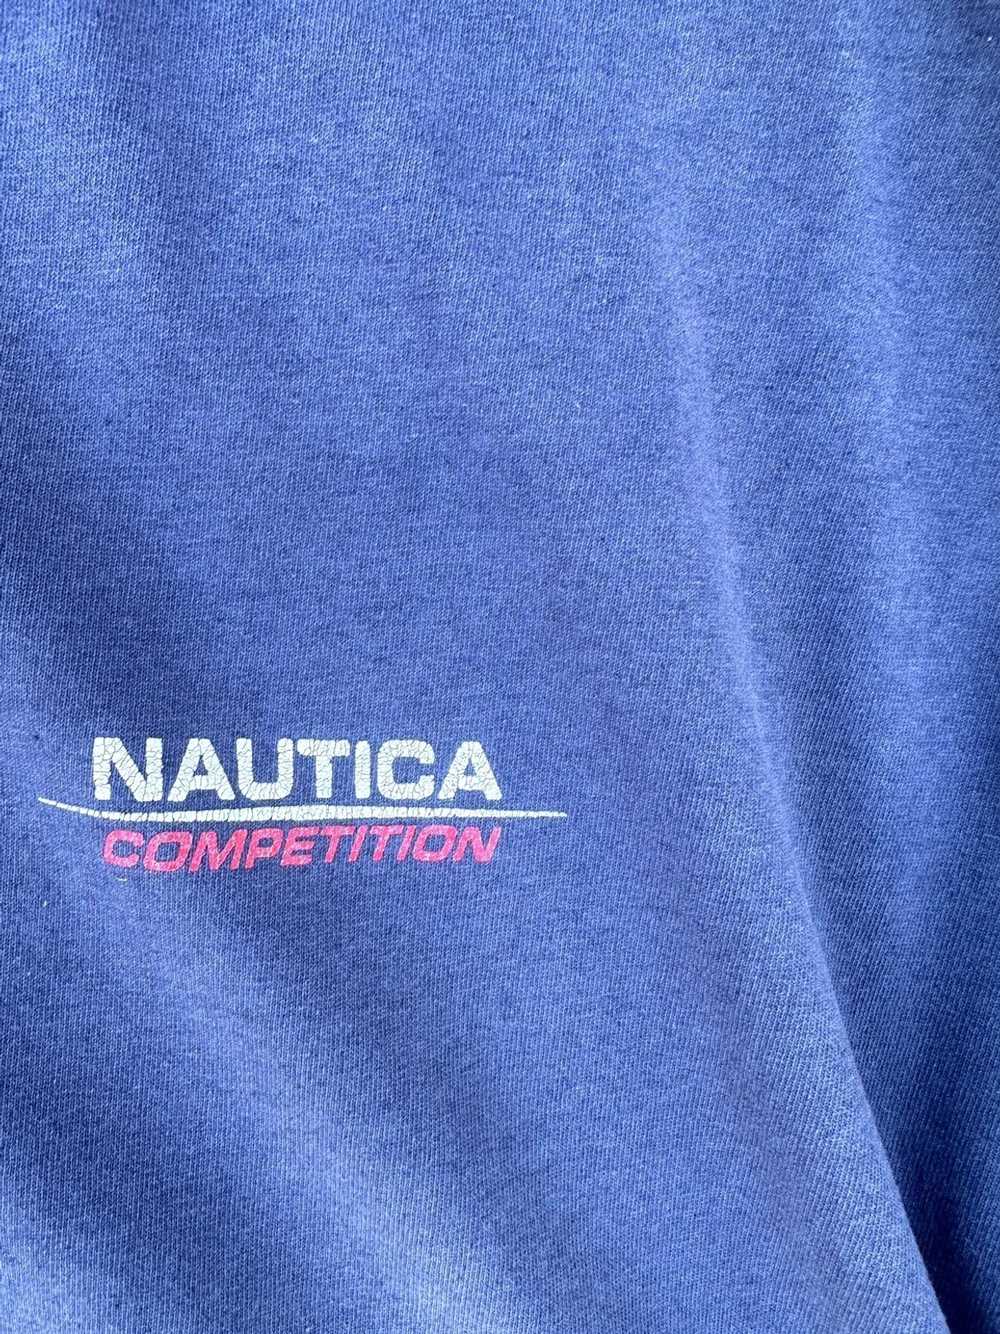 Nautica × Vintage Vintage Nautica Tee Shirt Large… - image 7